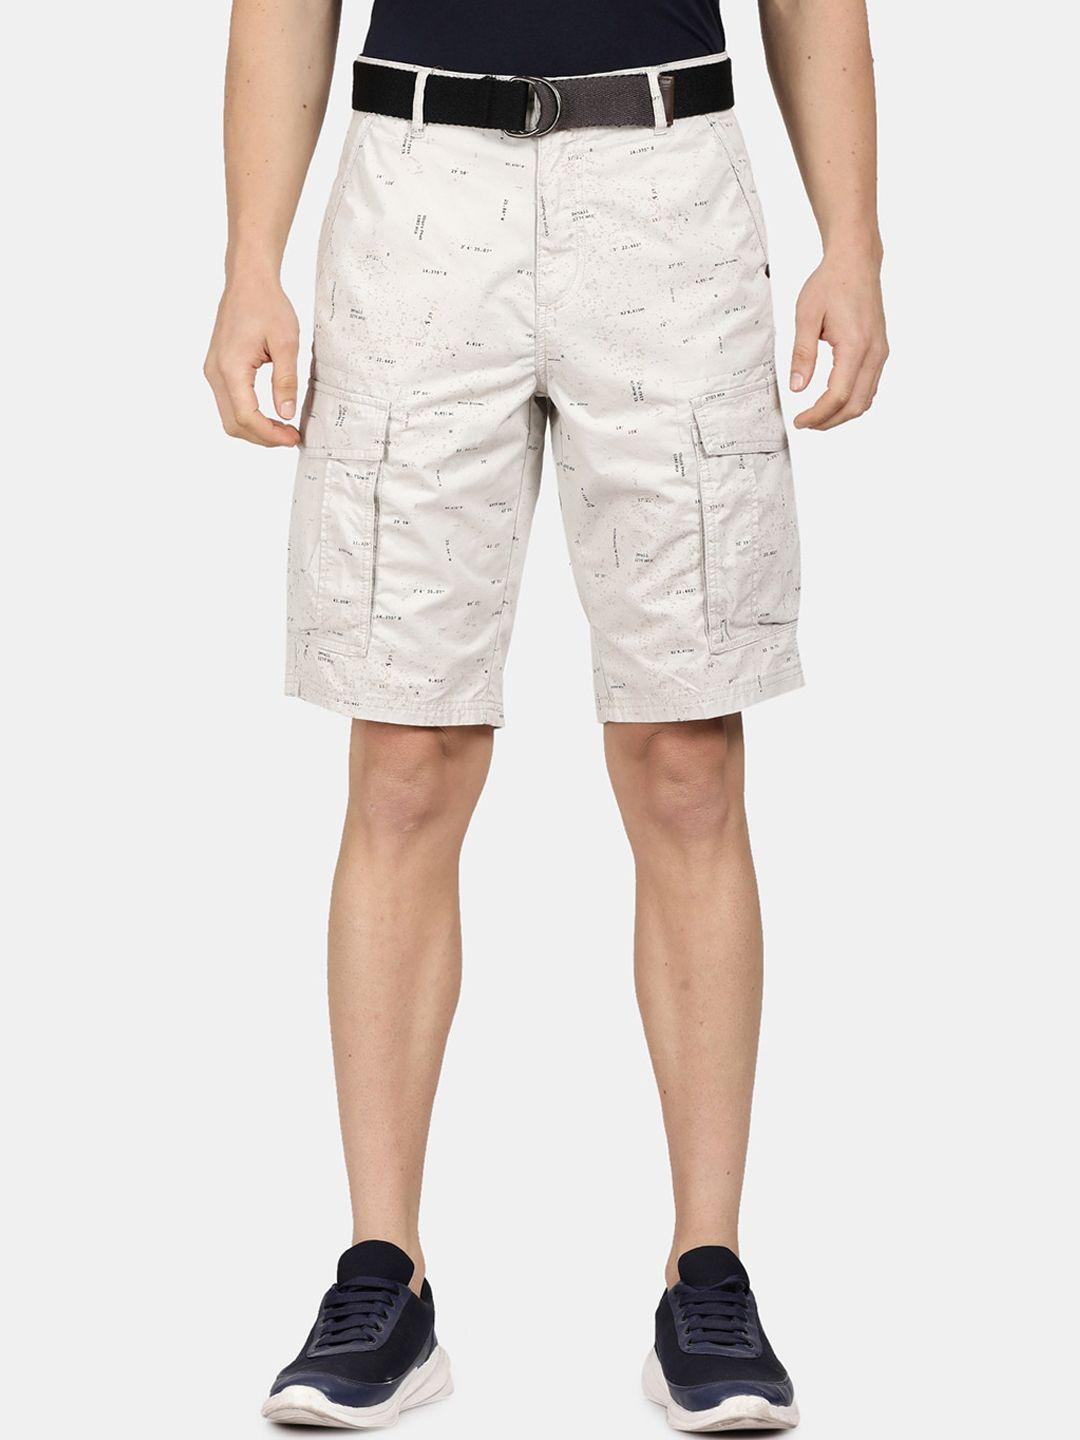 t-base-men-printed-cargo-shorts